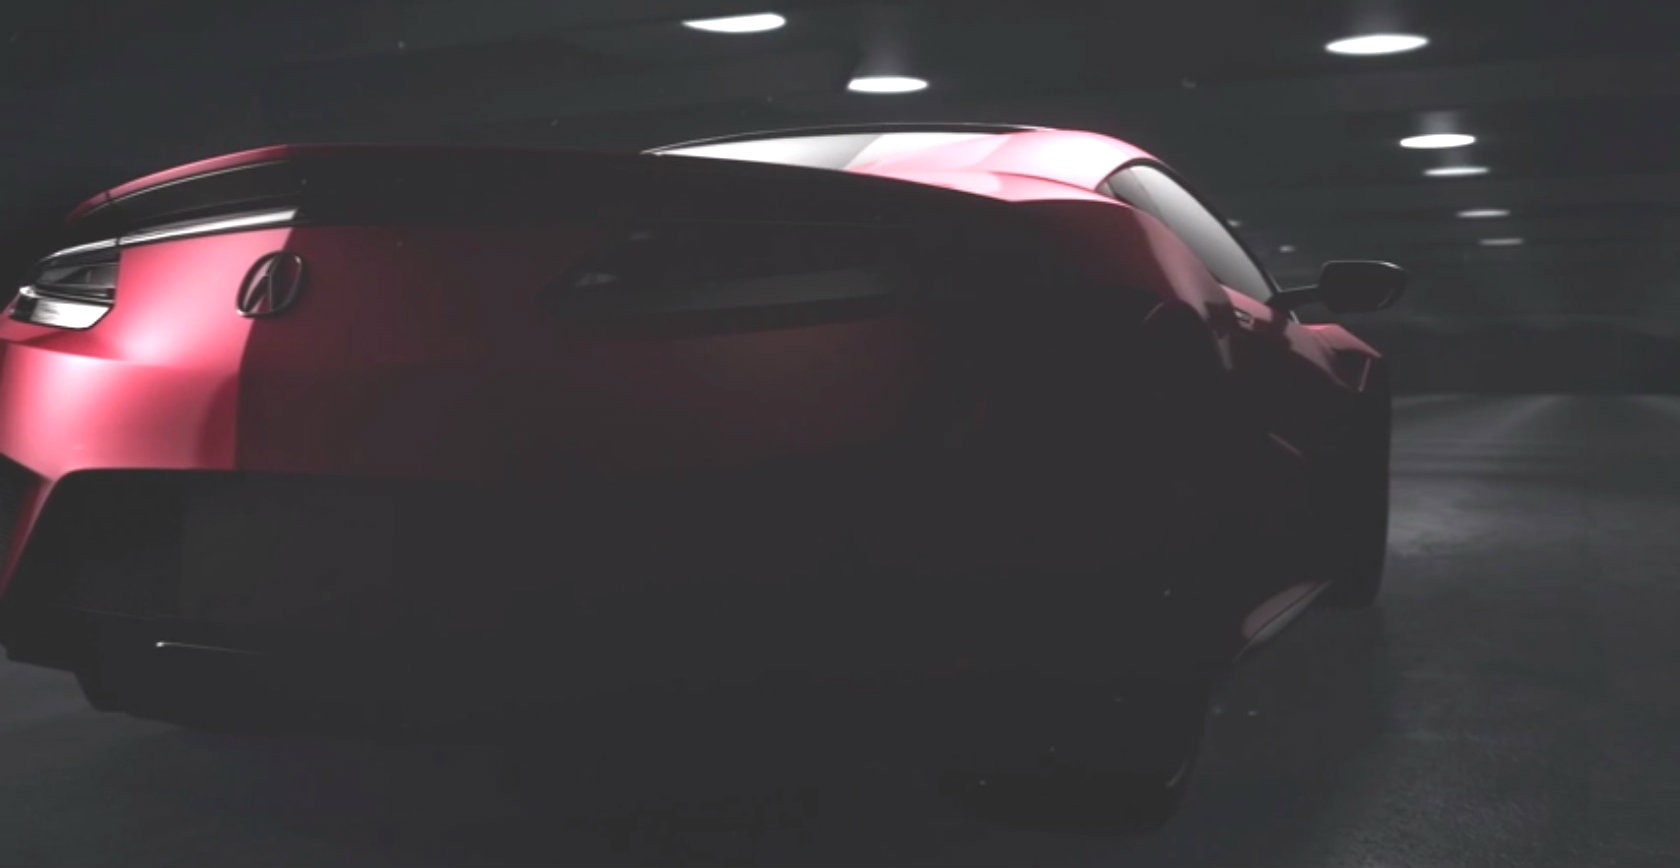 Siêu xe Acura NSX 2016 bản sản xuất sắp trình diện toàn cầu